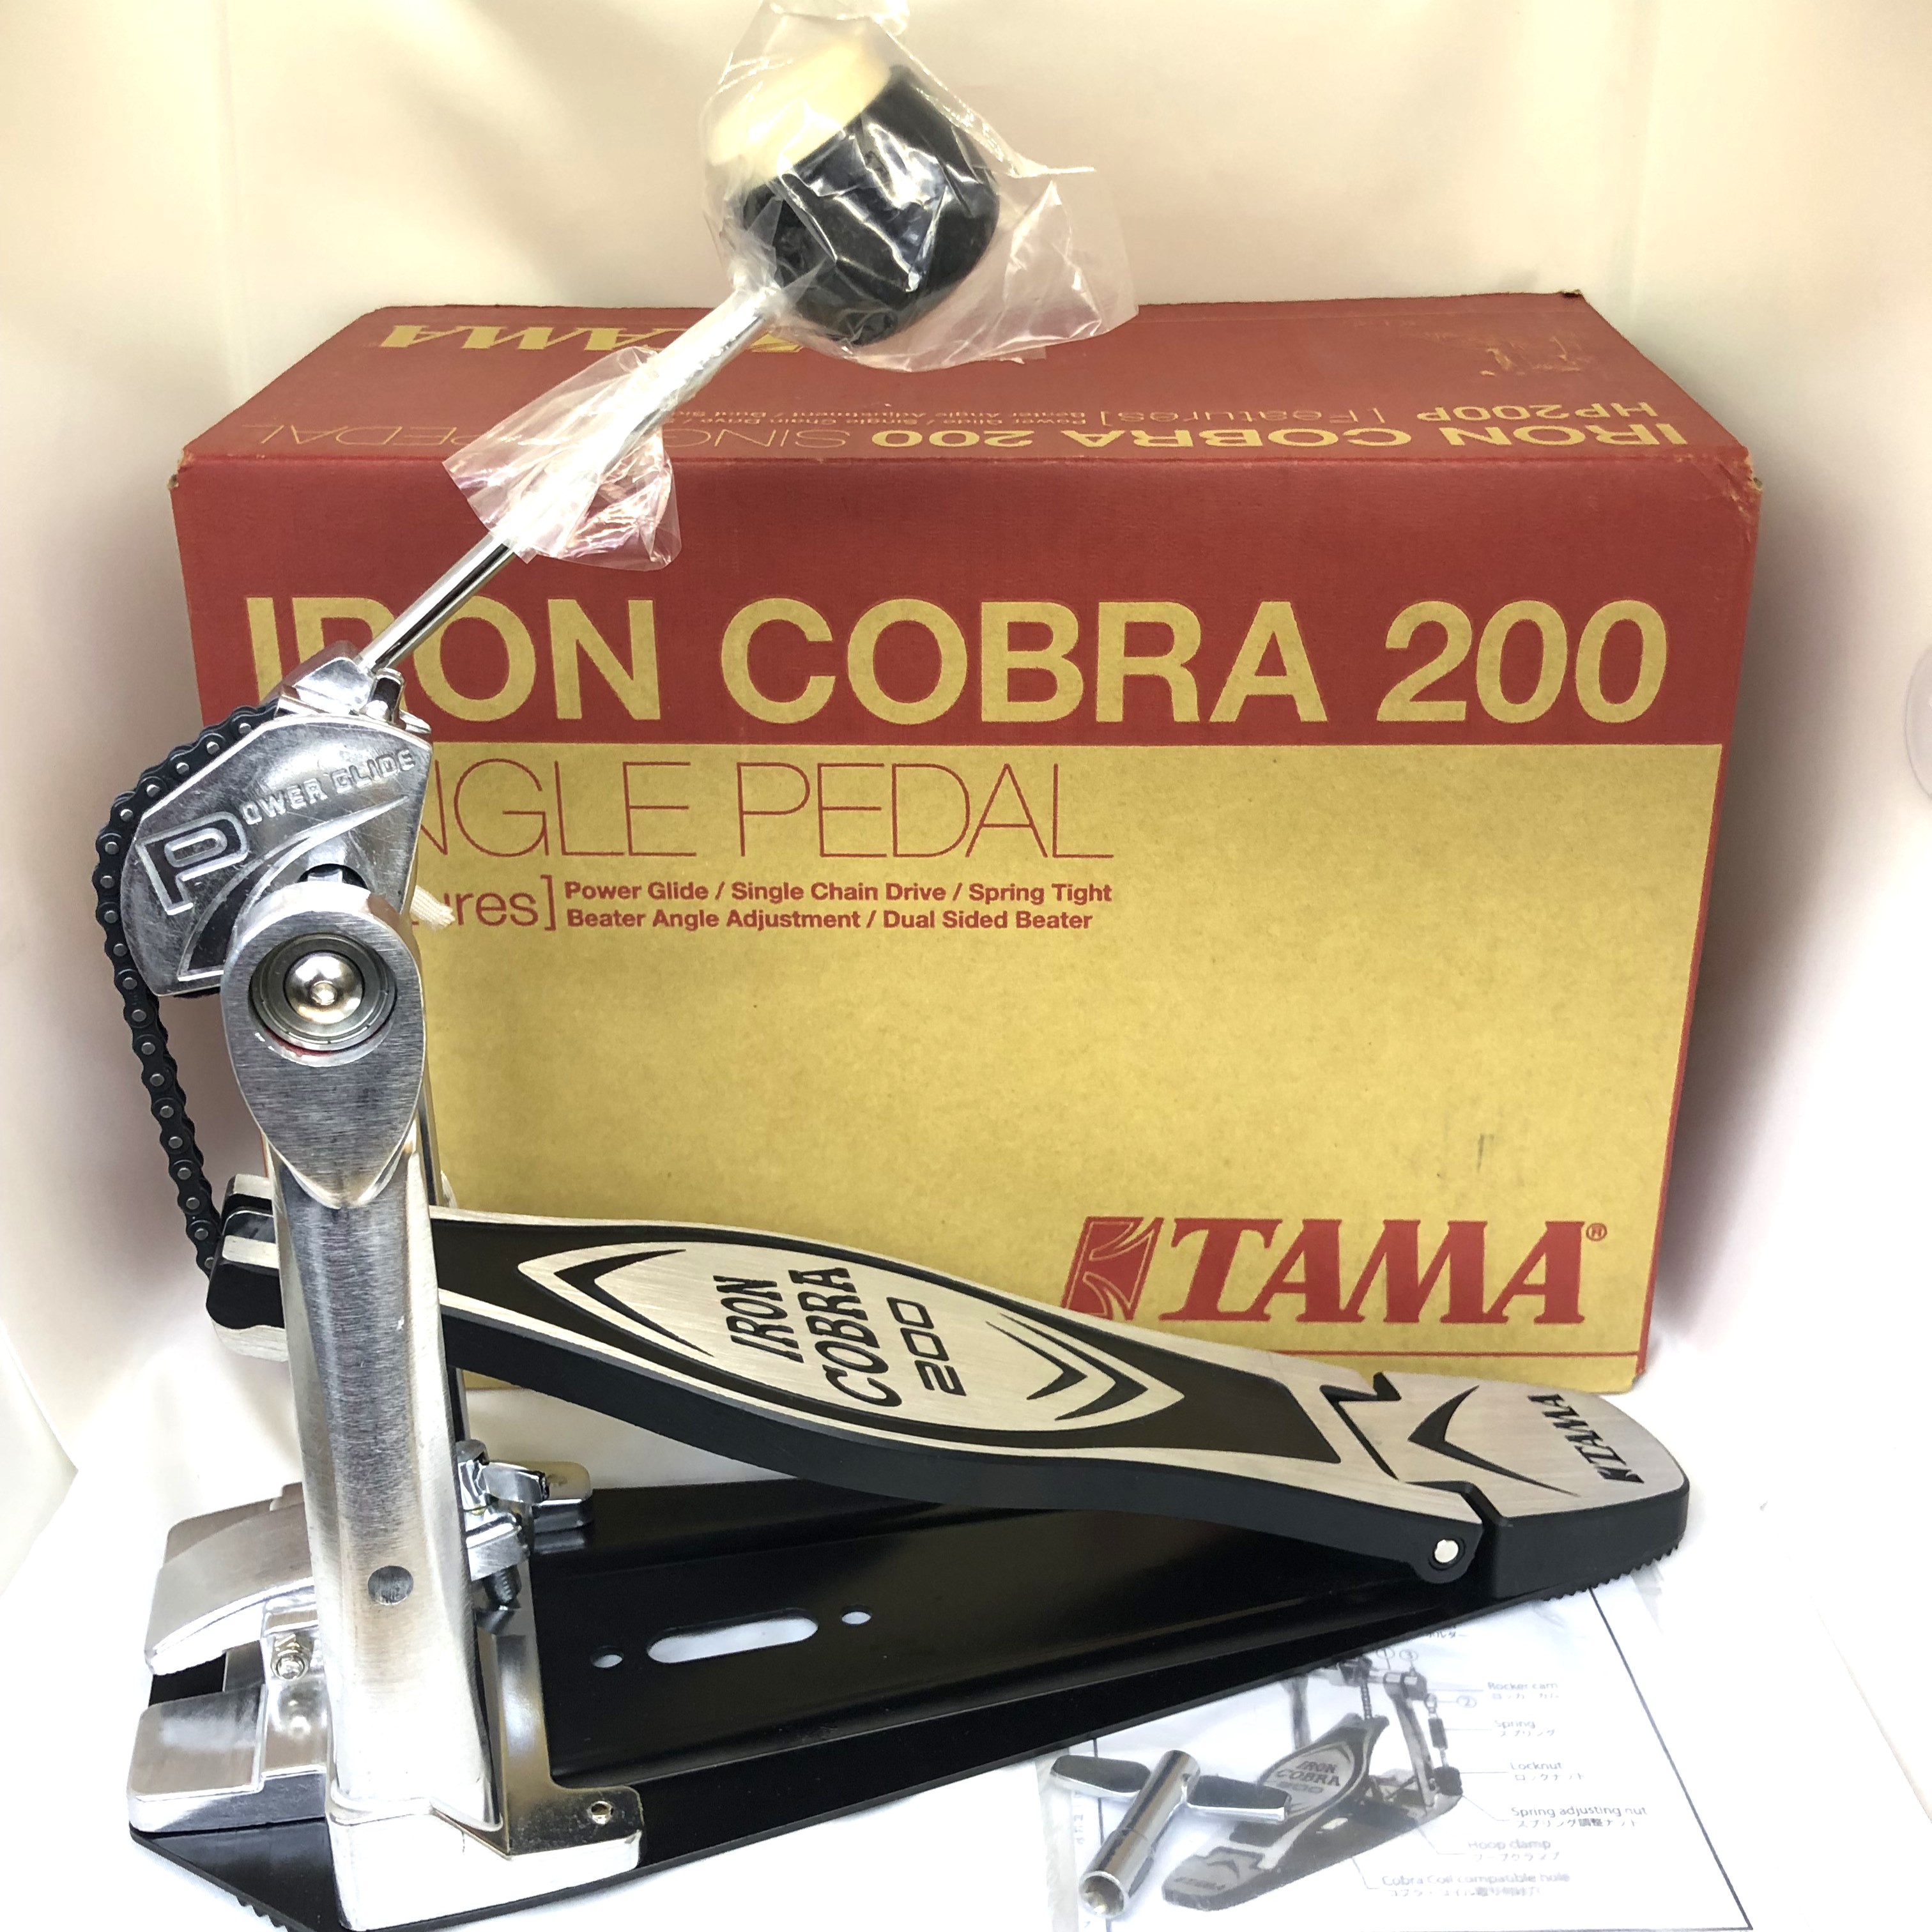 《アウトレット品》 TAMA タマ HP200P Iron Cobra 200 Single Pedal Power Glide シングルペダル